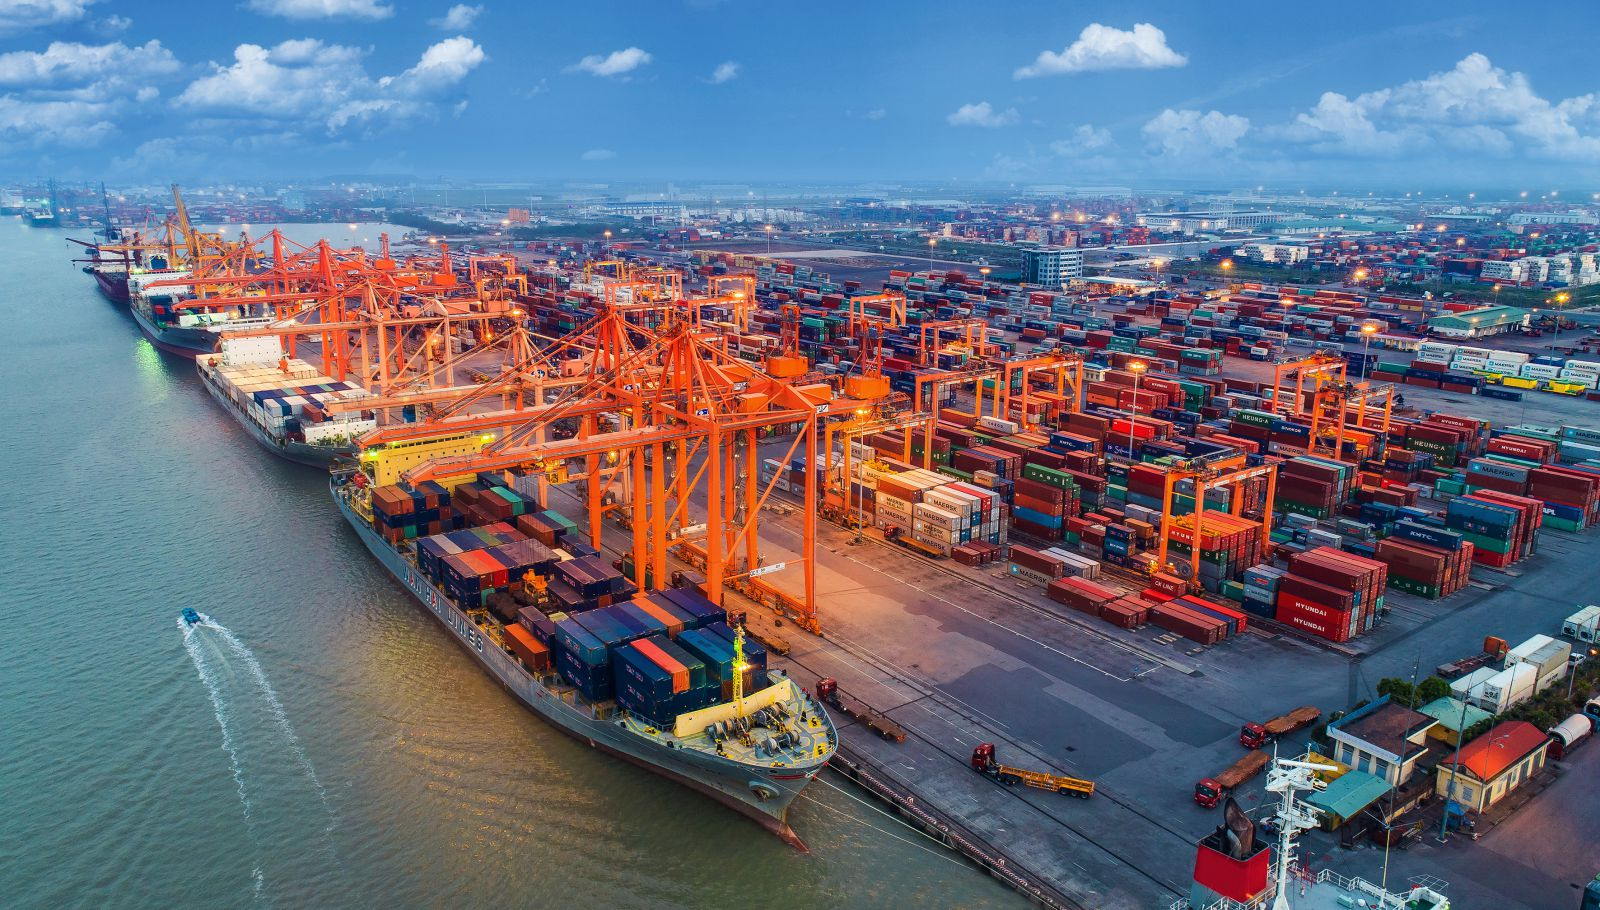 Cảng Hải Phòng là một trong 2 cảng đặc biệt đóng vai trò vô cùng quan trọng để thúc đẩy nền kinh tế liên vùng và cả nước